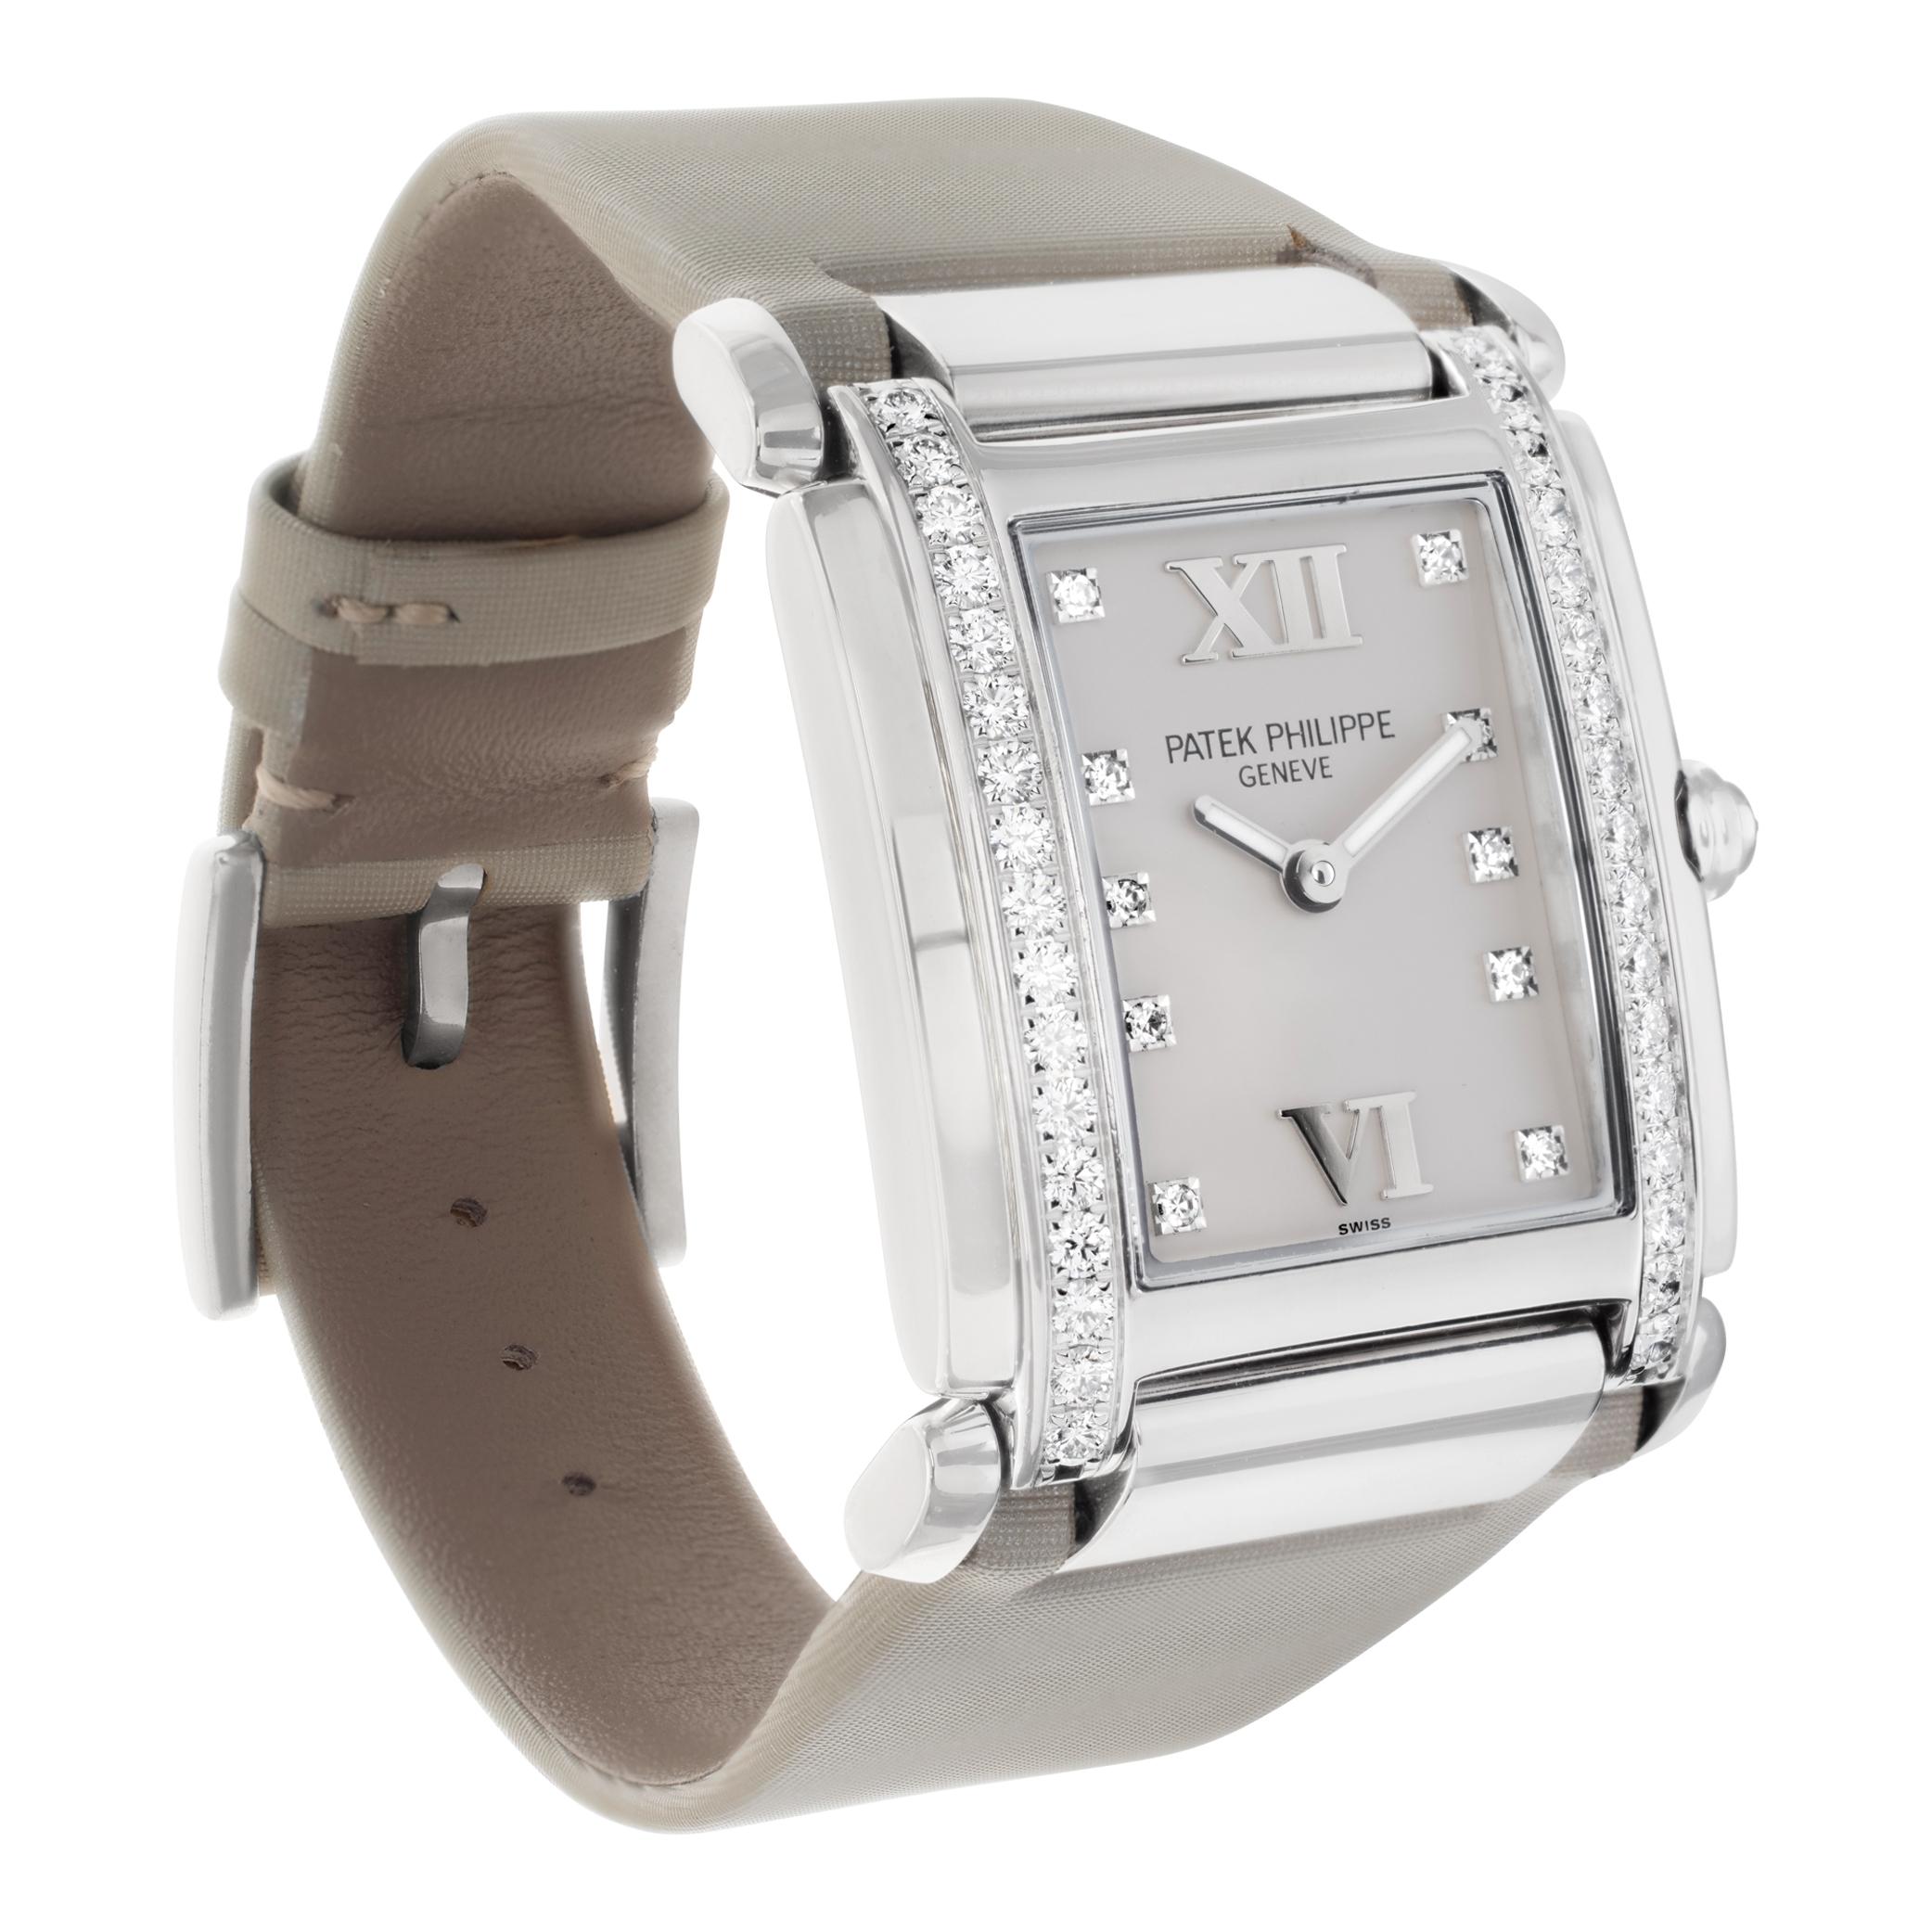 Patek Philippe Twenty 4 18k white gold Quartz Wristwatch Ref 4920 In Excellent Condition For Sale In Surfside, FL